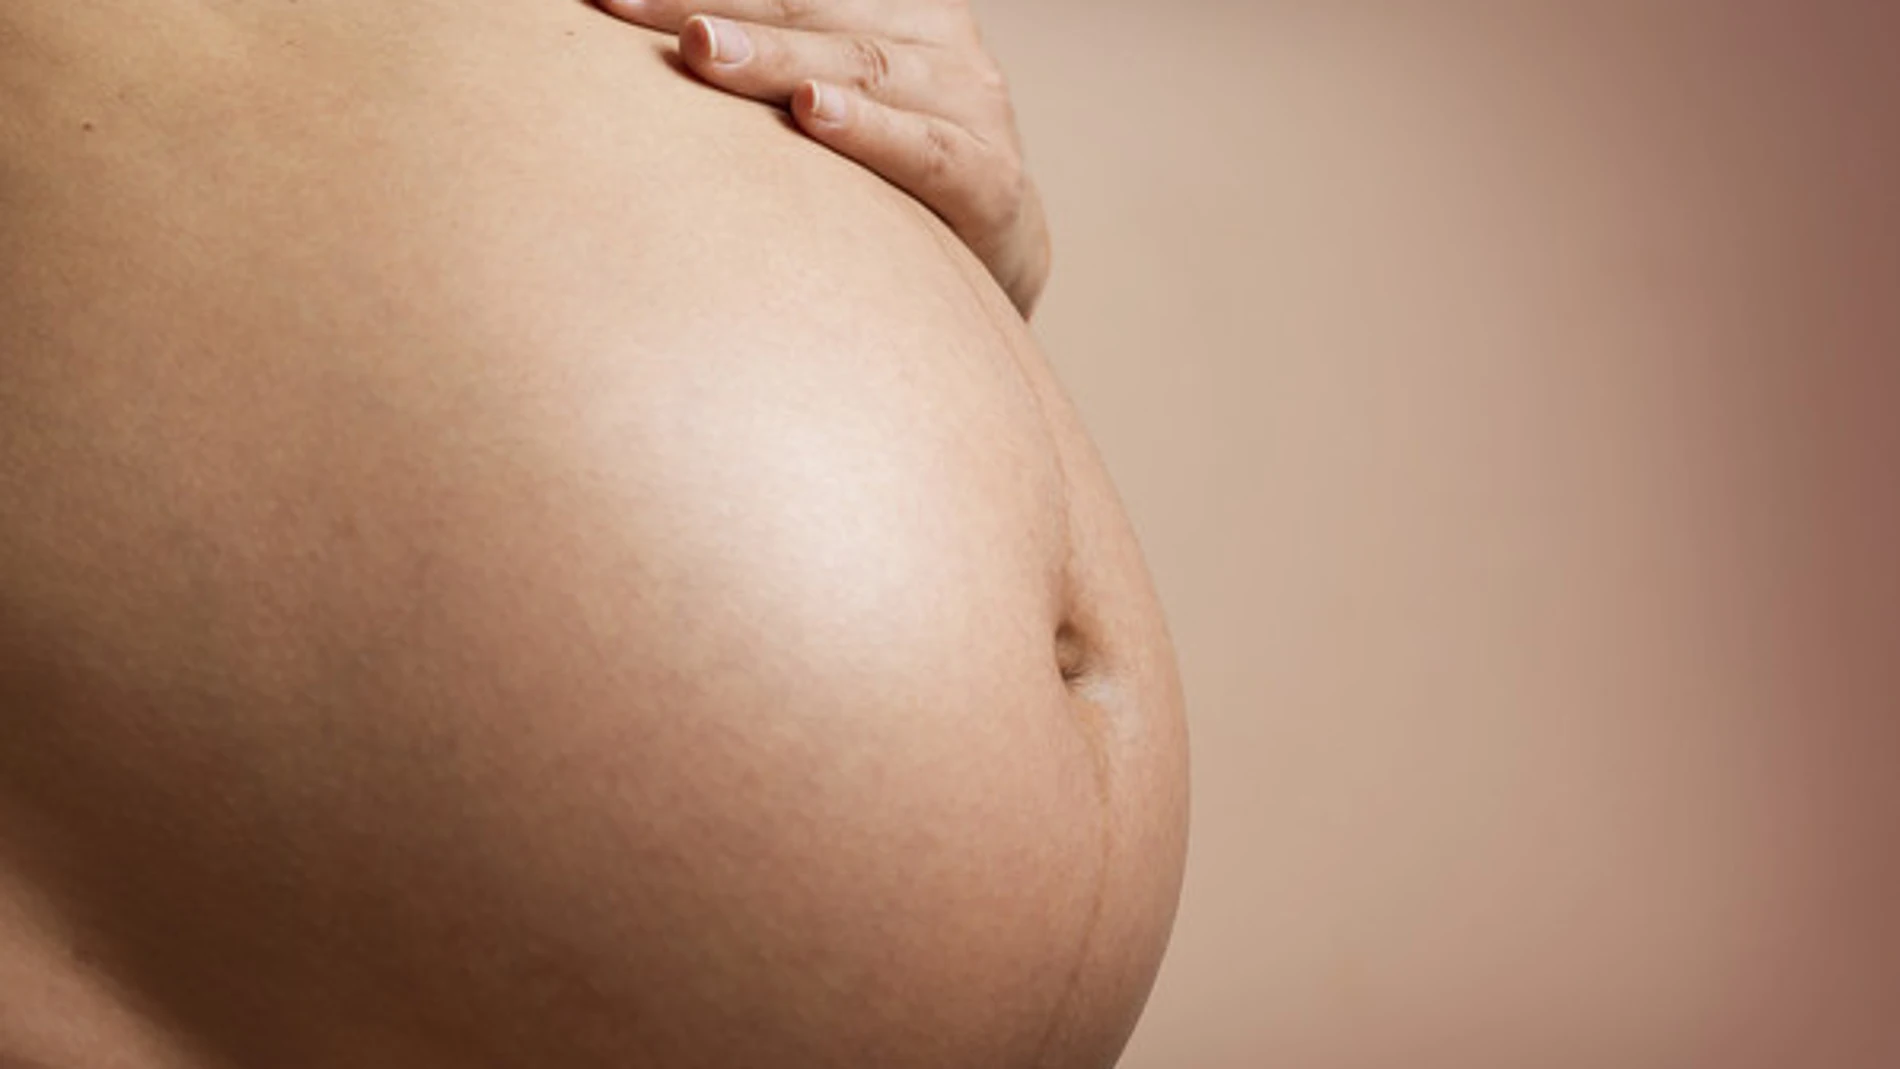 Aborto y Eutanasia ¿Son realmente un progreso?